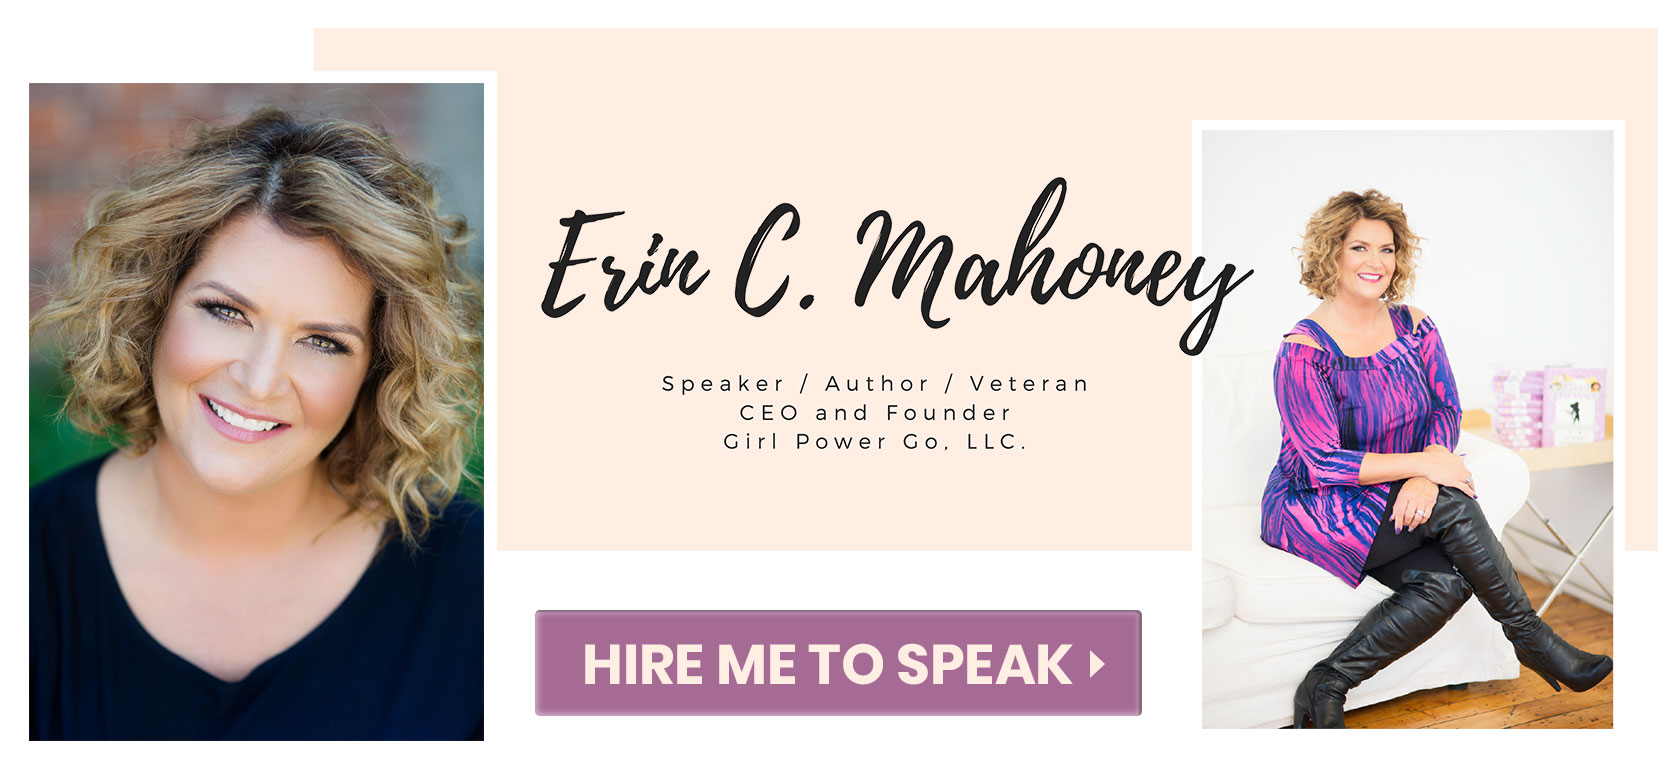 Erin Mahoney book author, motivational speaker, veteran – Hire me to speak